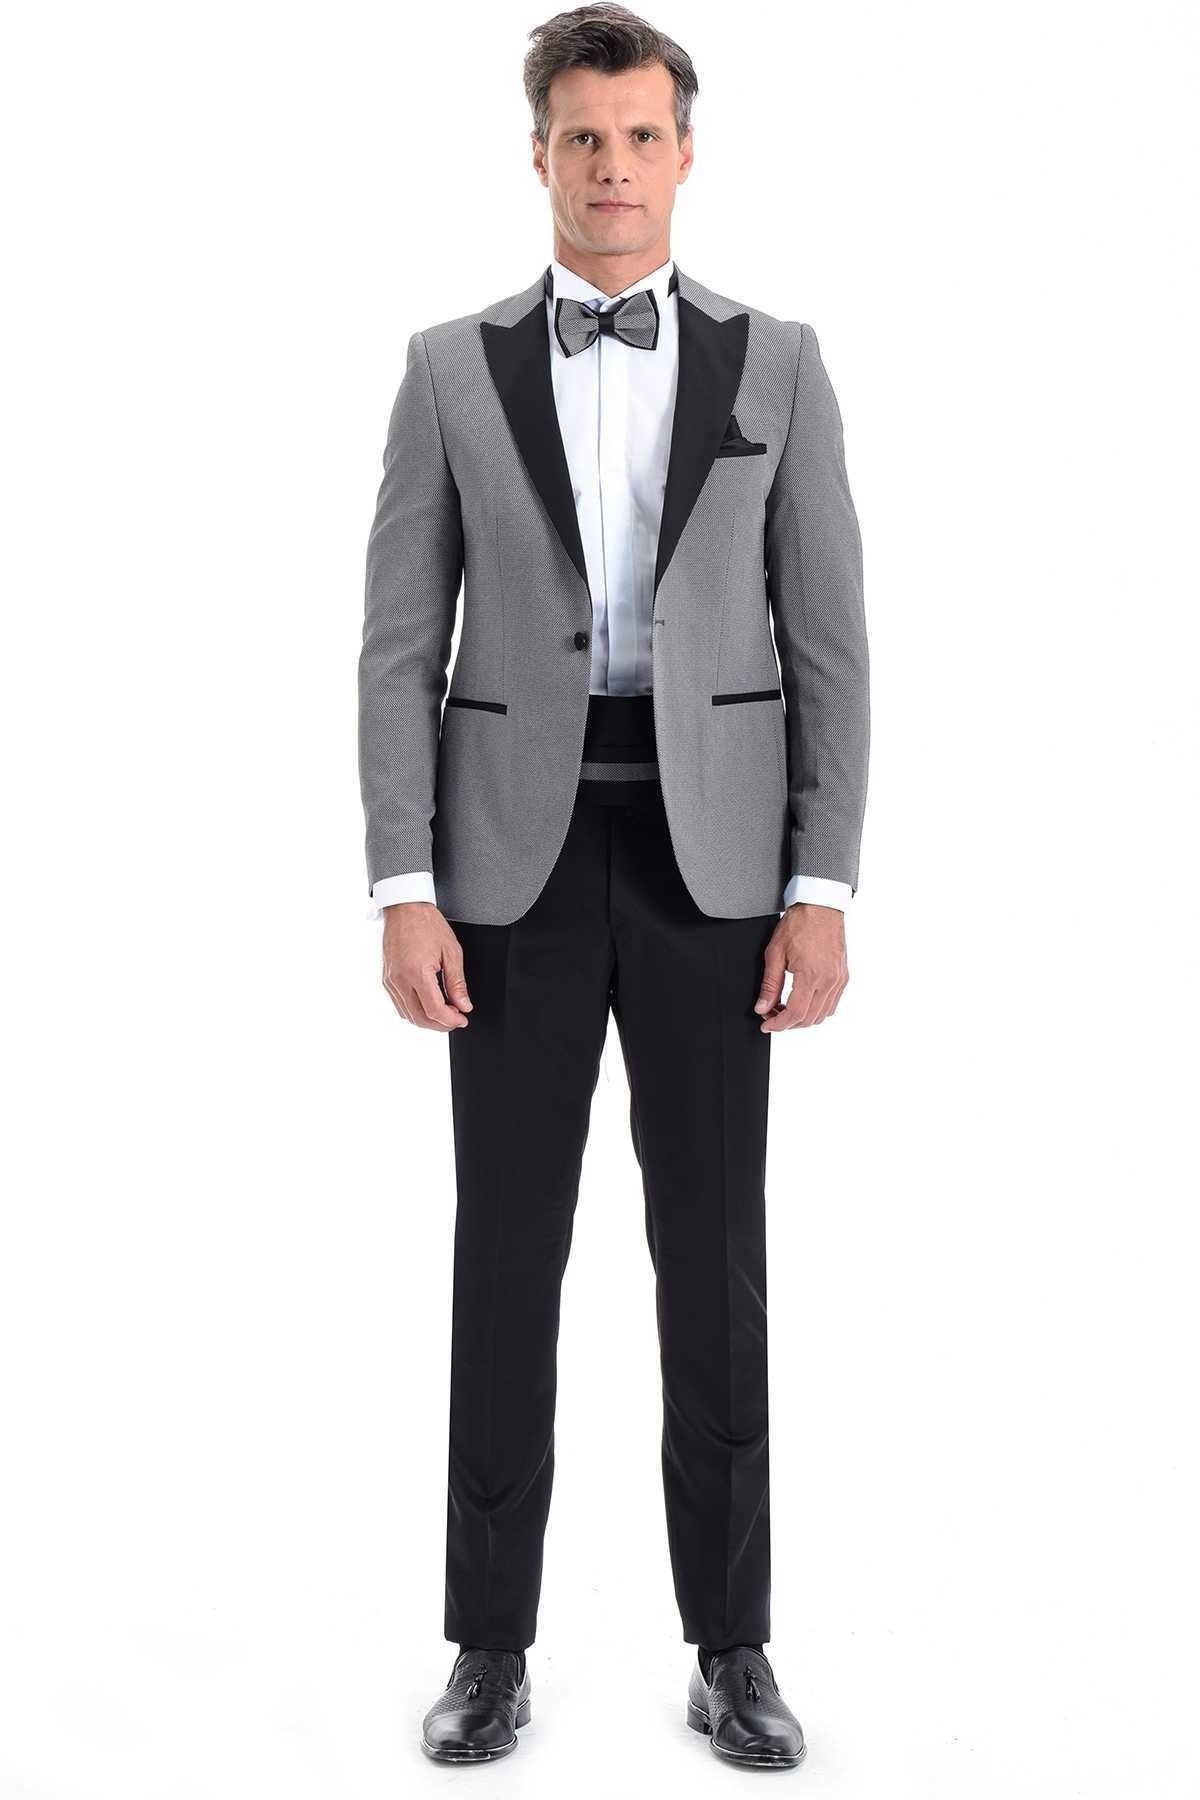 Morven Broadway Slim Fit Yelkli Damatlık Takım Elbise Orta Gri - 19MC055005105